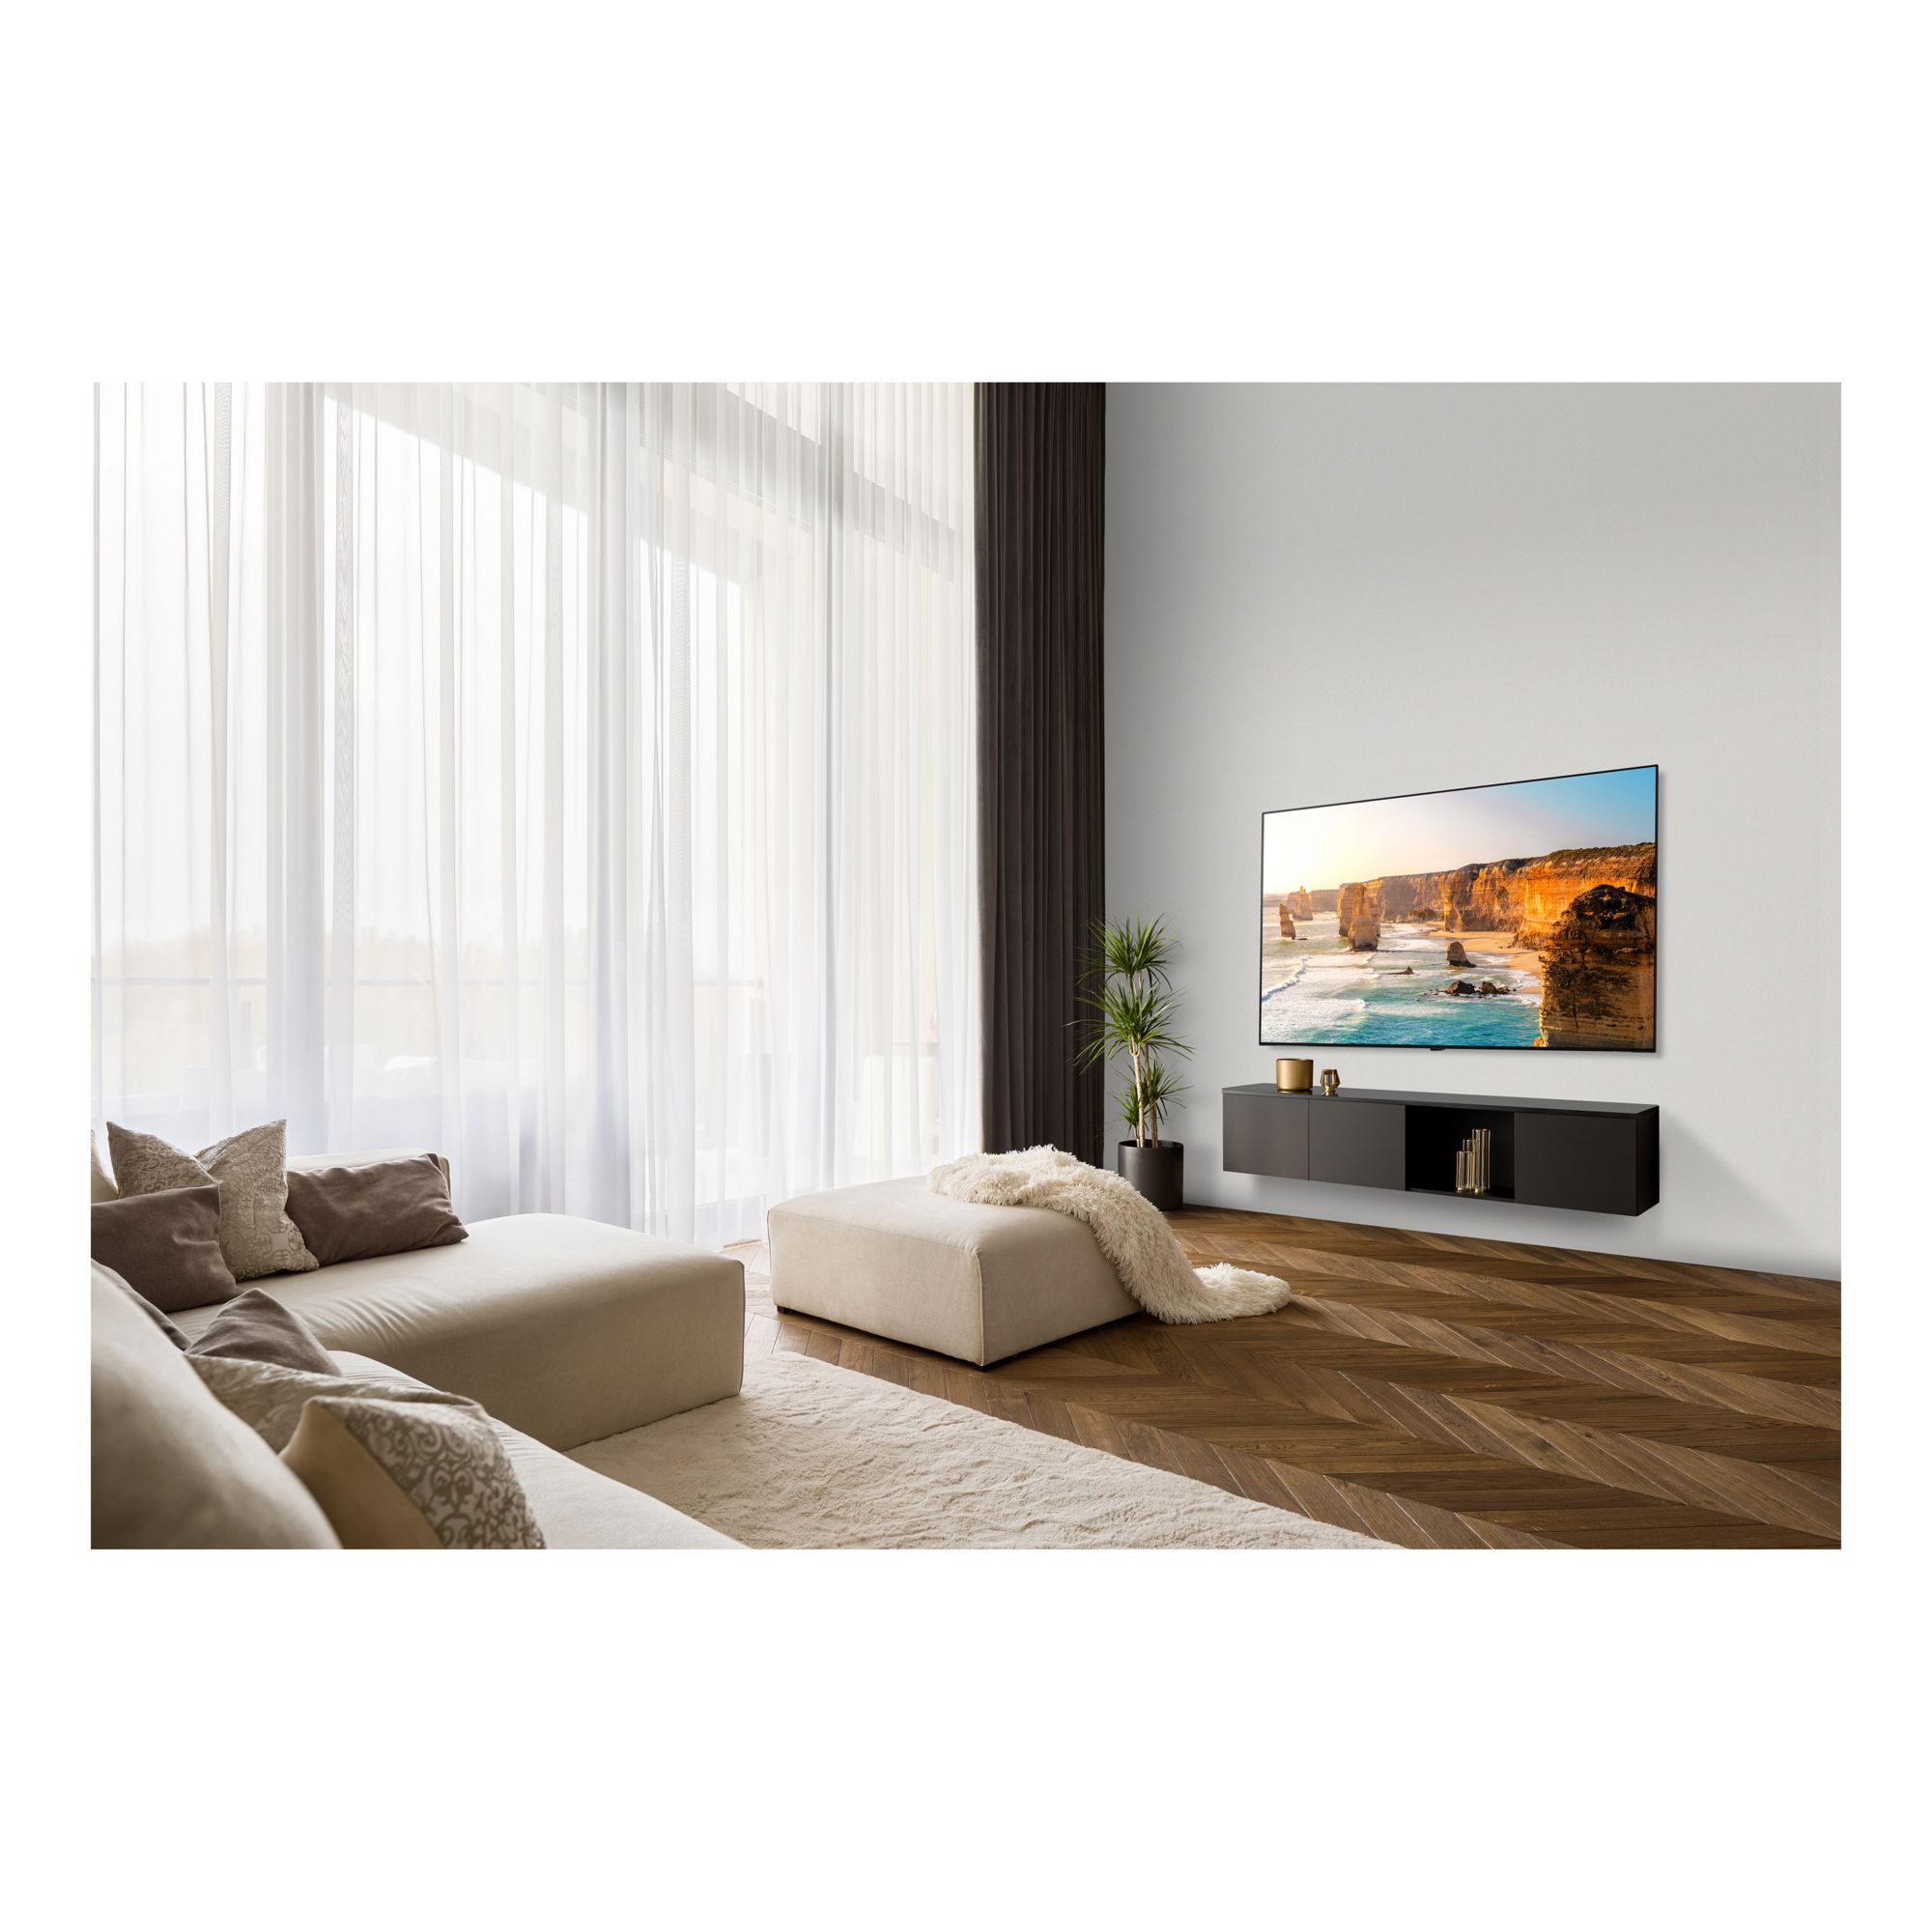 Pantalla LG 65 Pulgadas OLED Smart TV con ThinQ AI OLED65B3PSA a